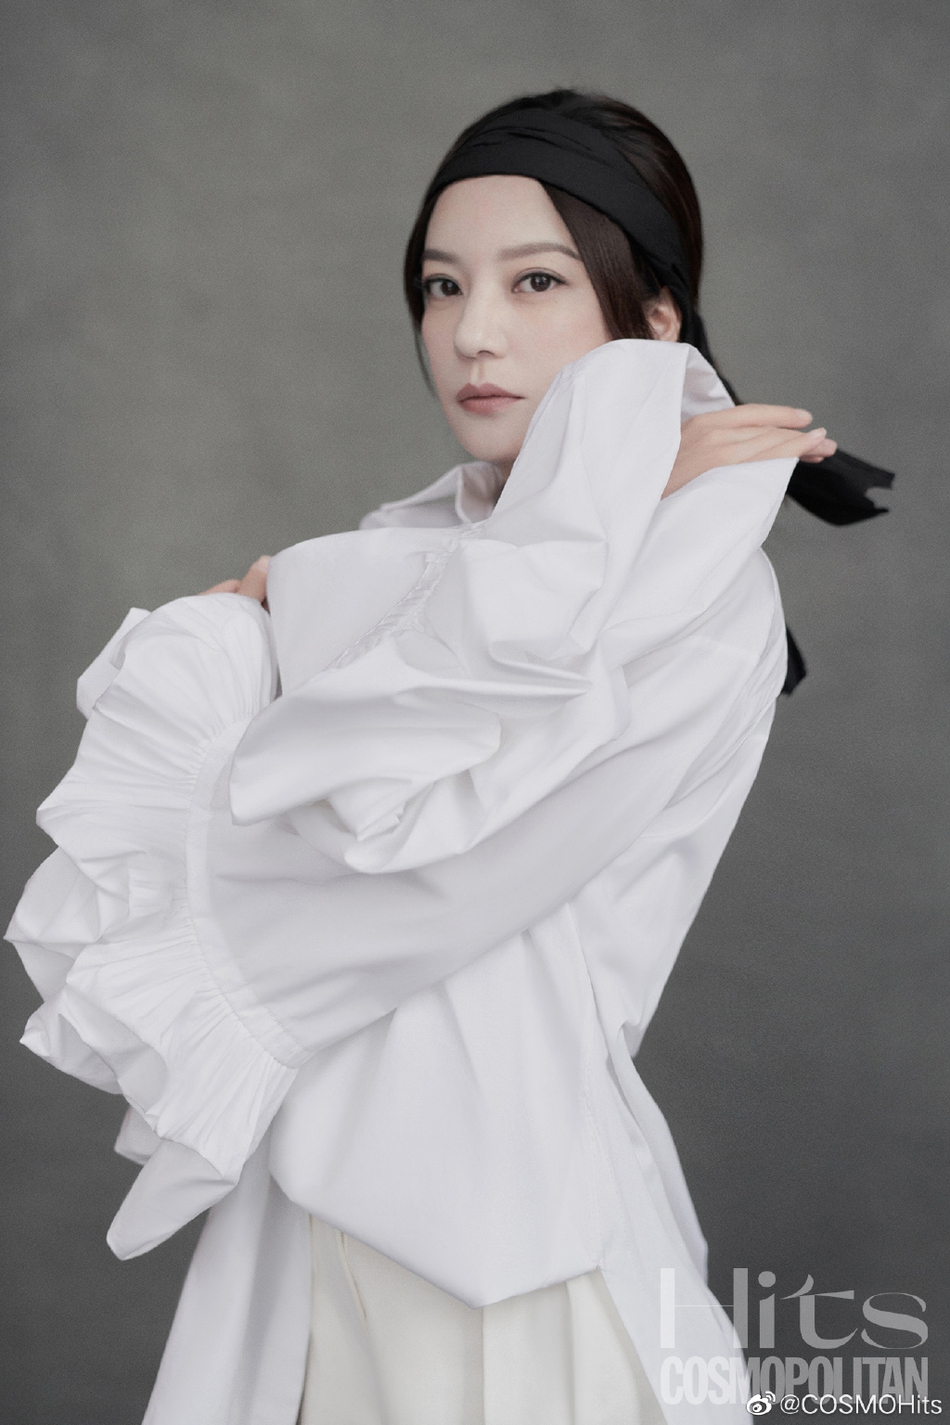 组图:赵薇最新写真极简风格显文艺 穿白西装搭配黑头巾知性优雅